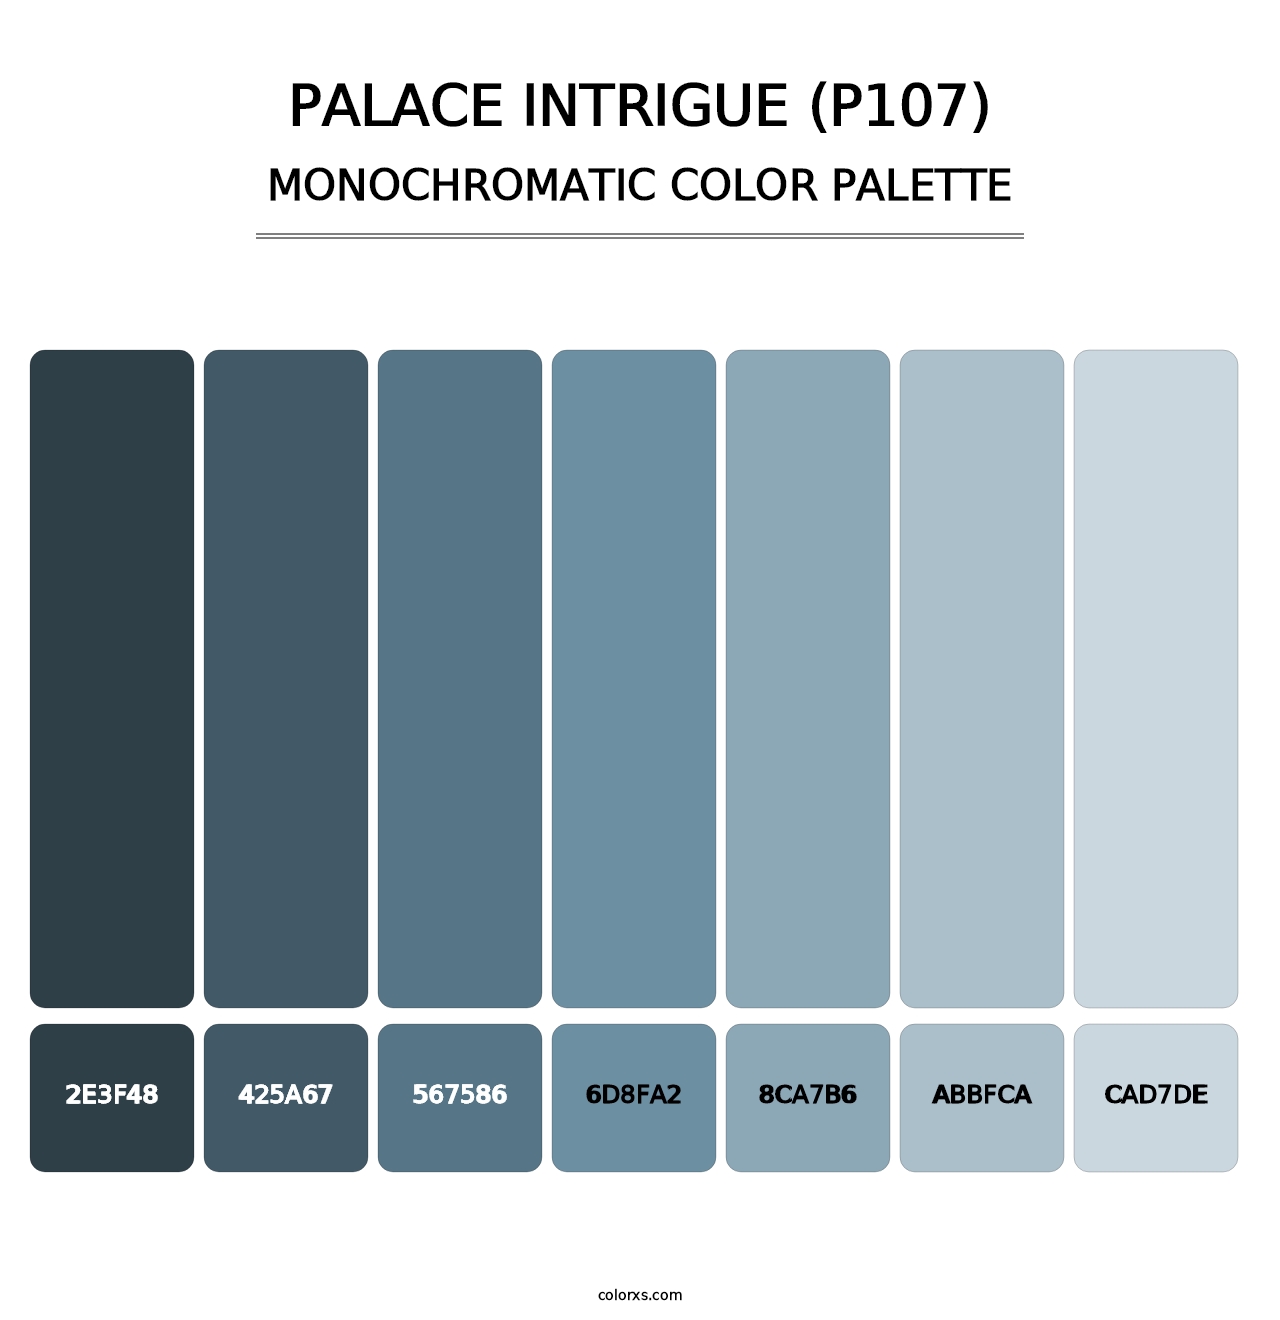 Palace Intrigue (P107) - Monochromatic Color Palette